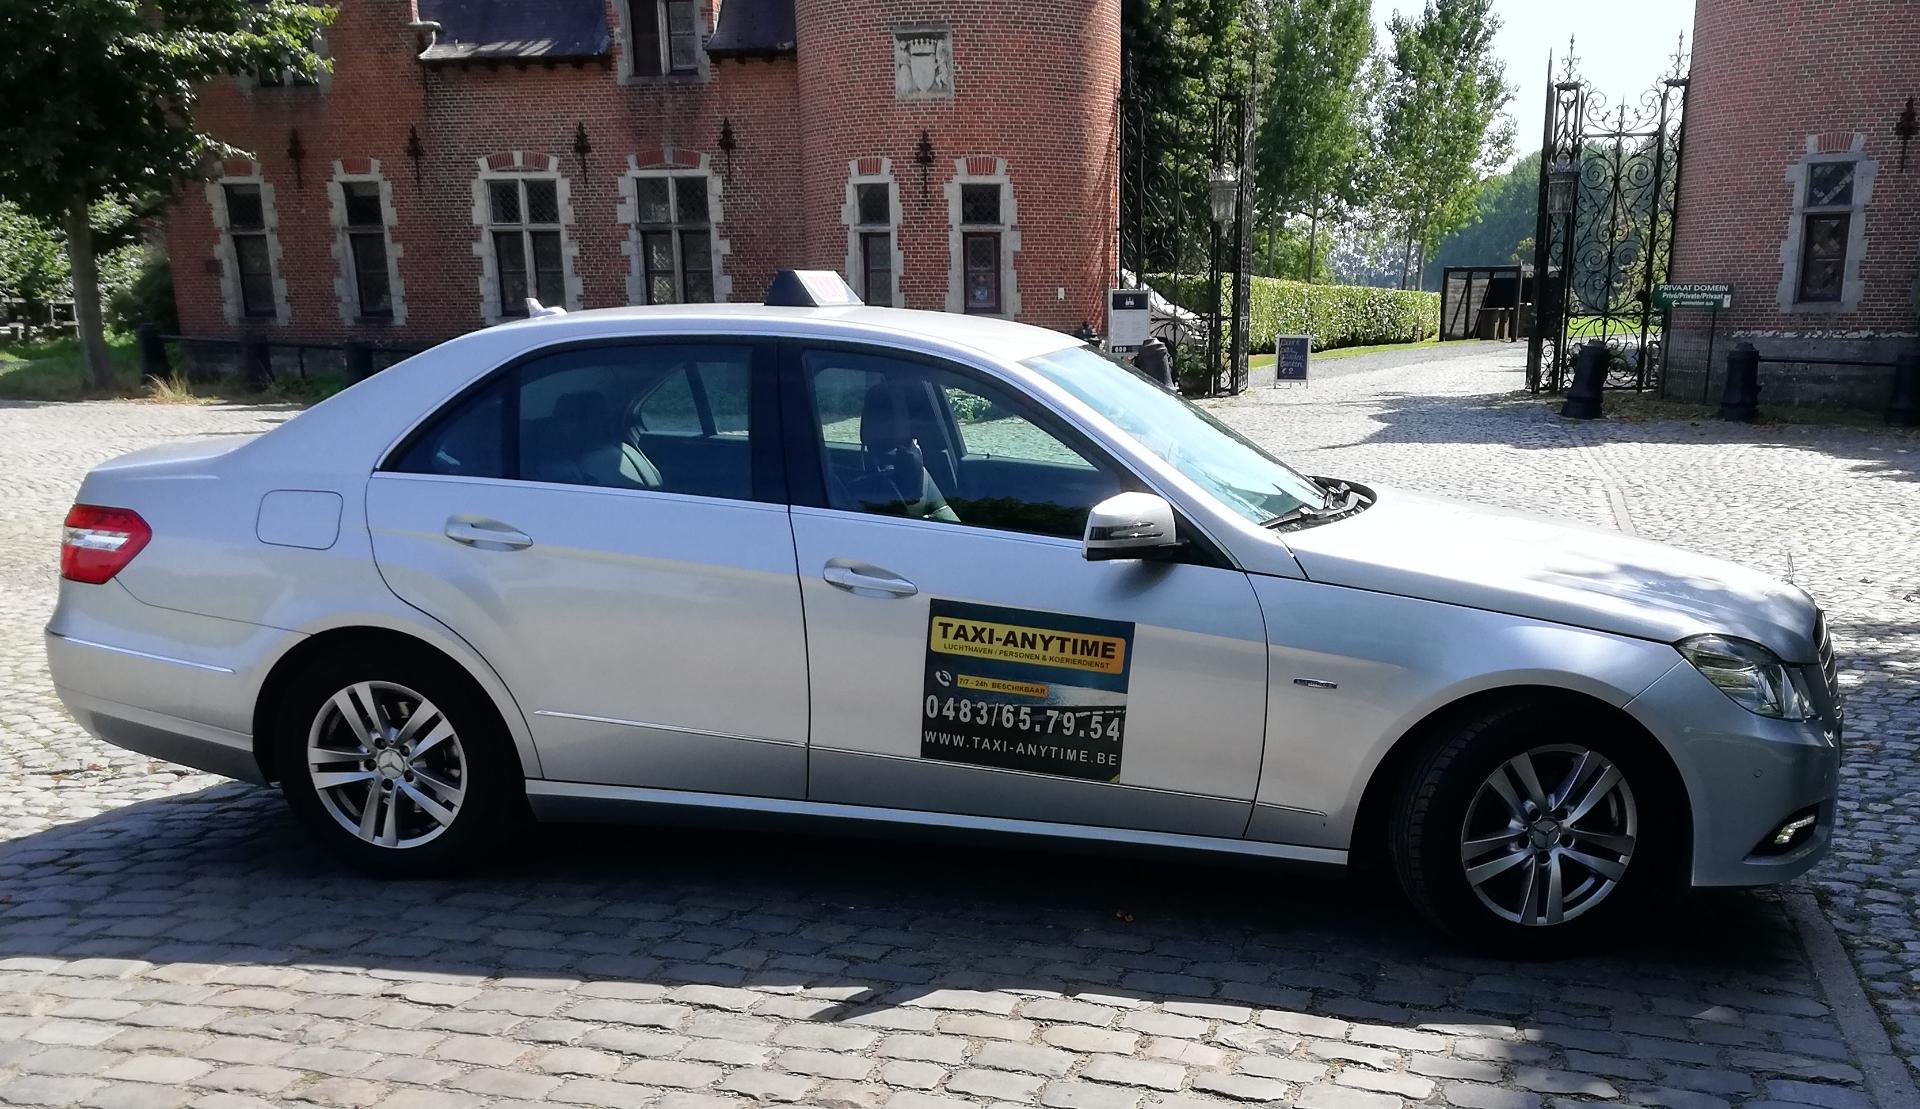 taxibedrijven met luchthavenvervoer Brugge Taxi Anytime